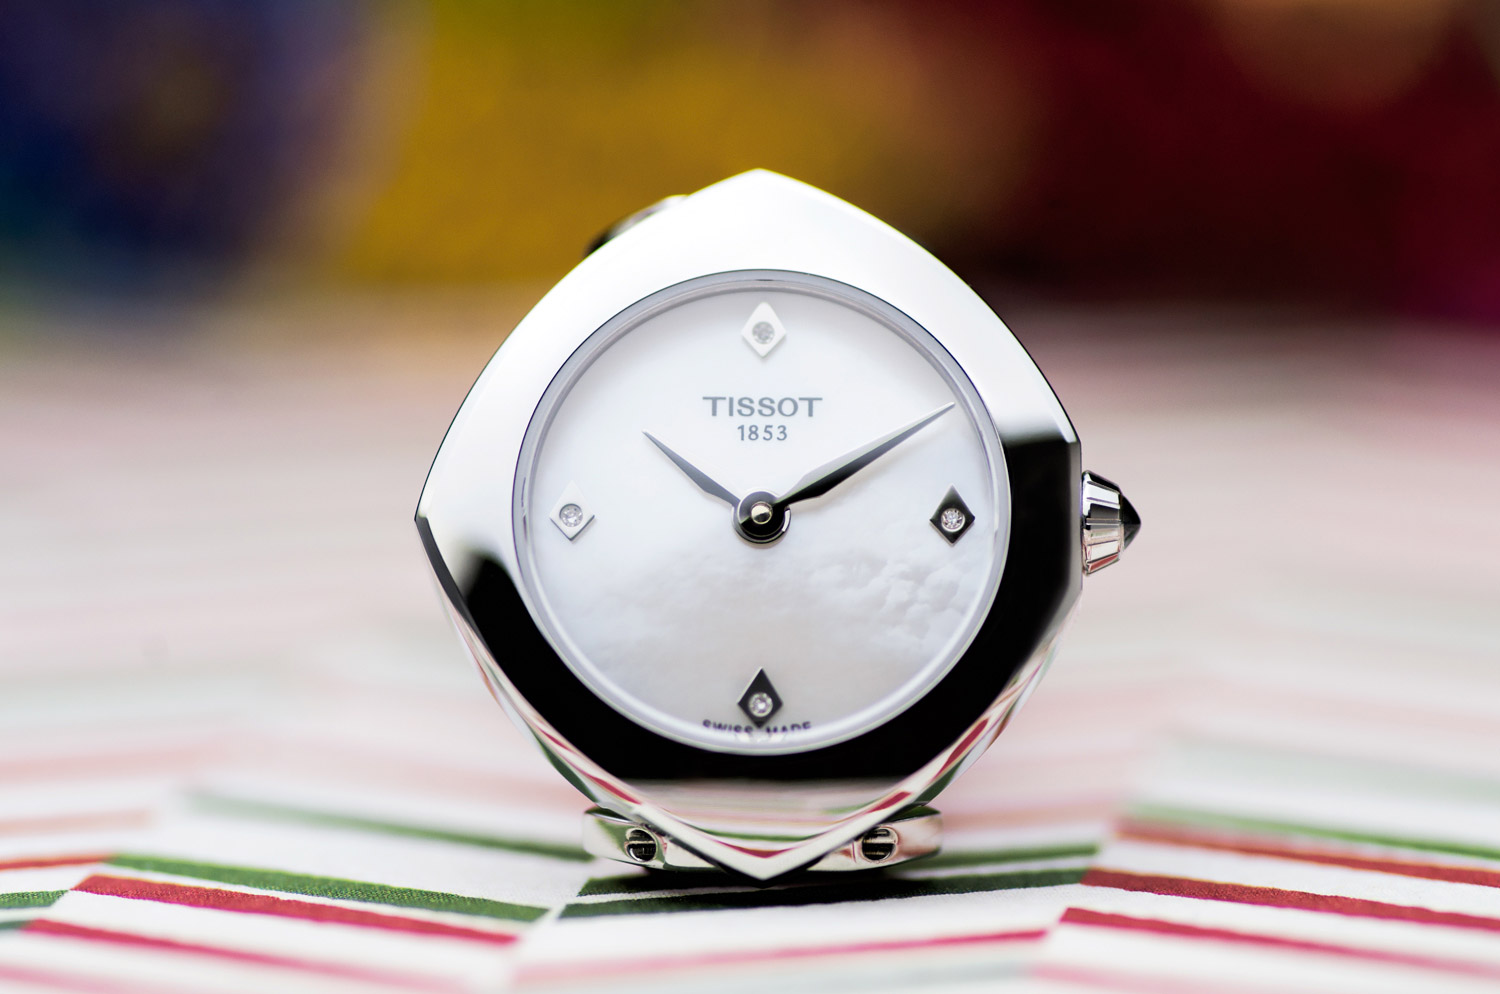 Đồng hồ nữ Tissot Femini-T xu hướng đồng hồ 2018